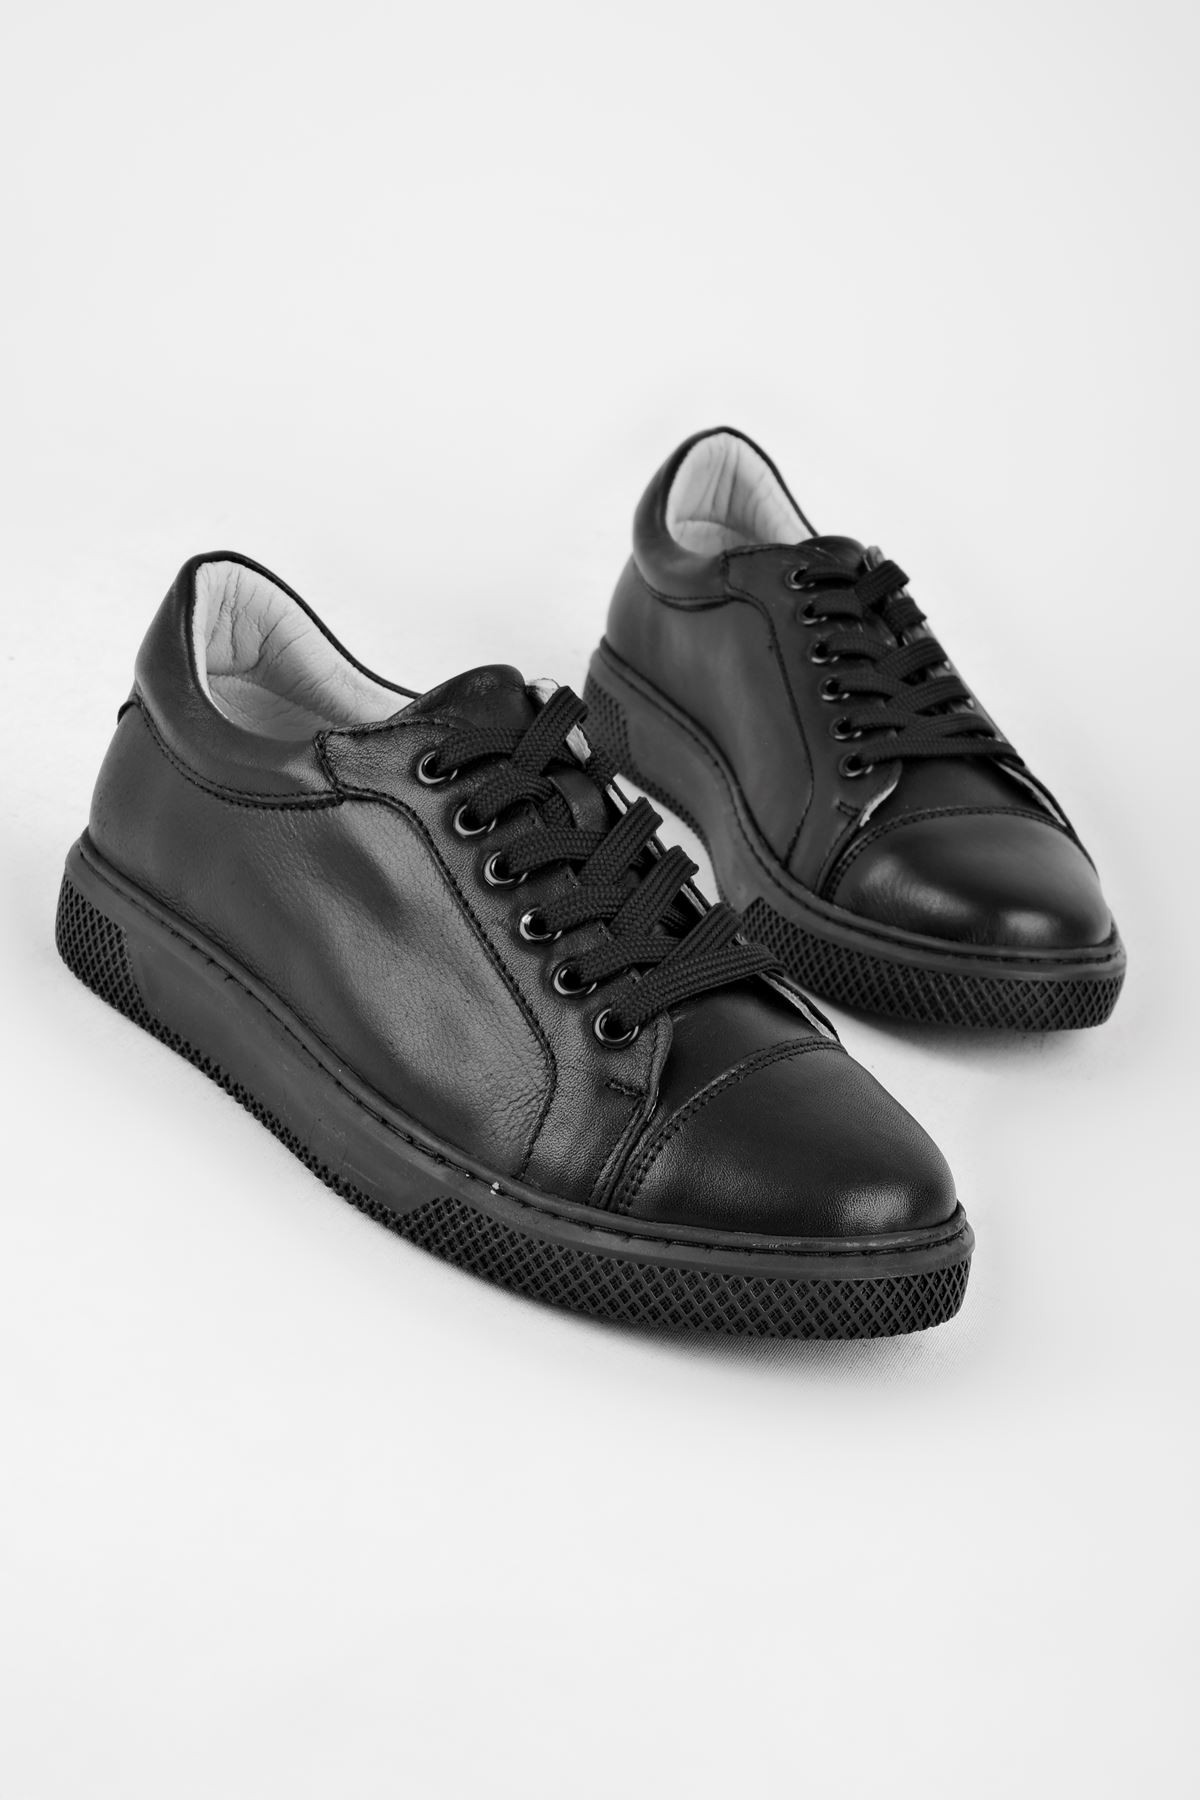 Barry Bağcıklı Kadın Hakiki Deri Spor Ayakkabı-B2790-1 - Siyah